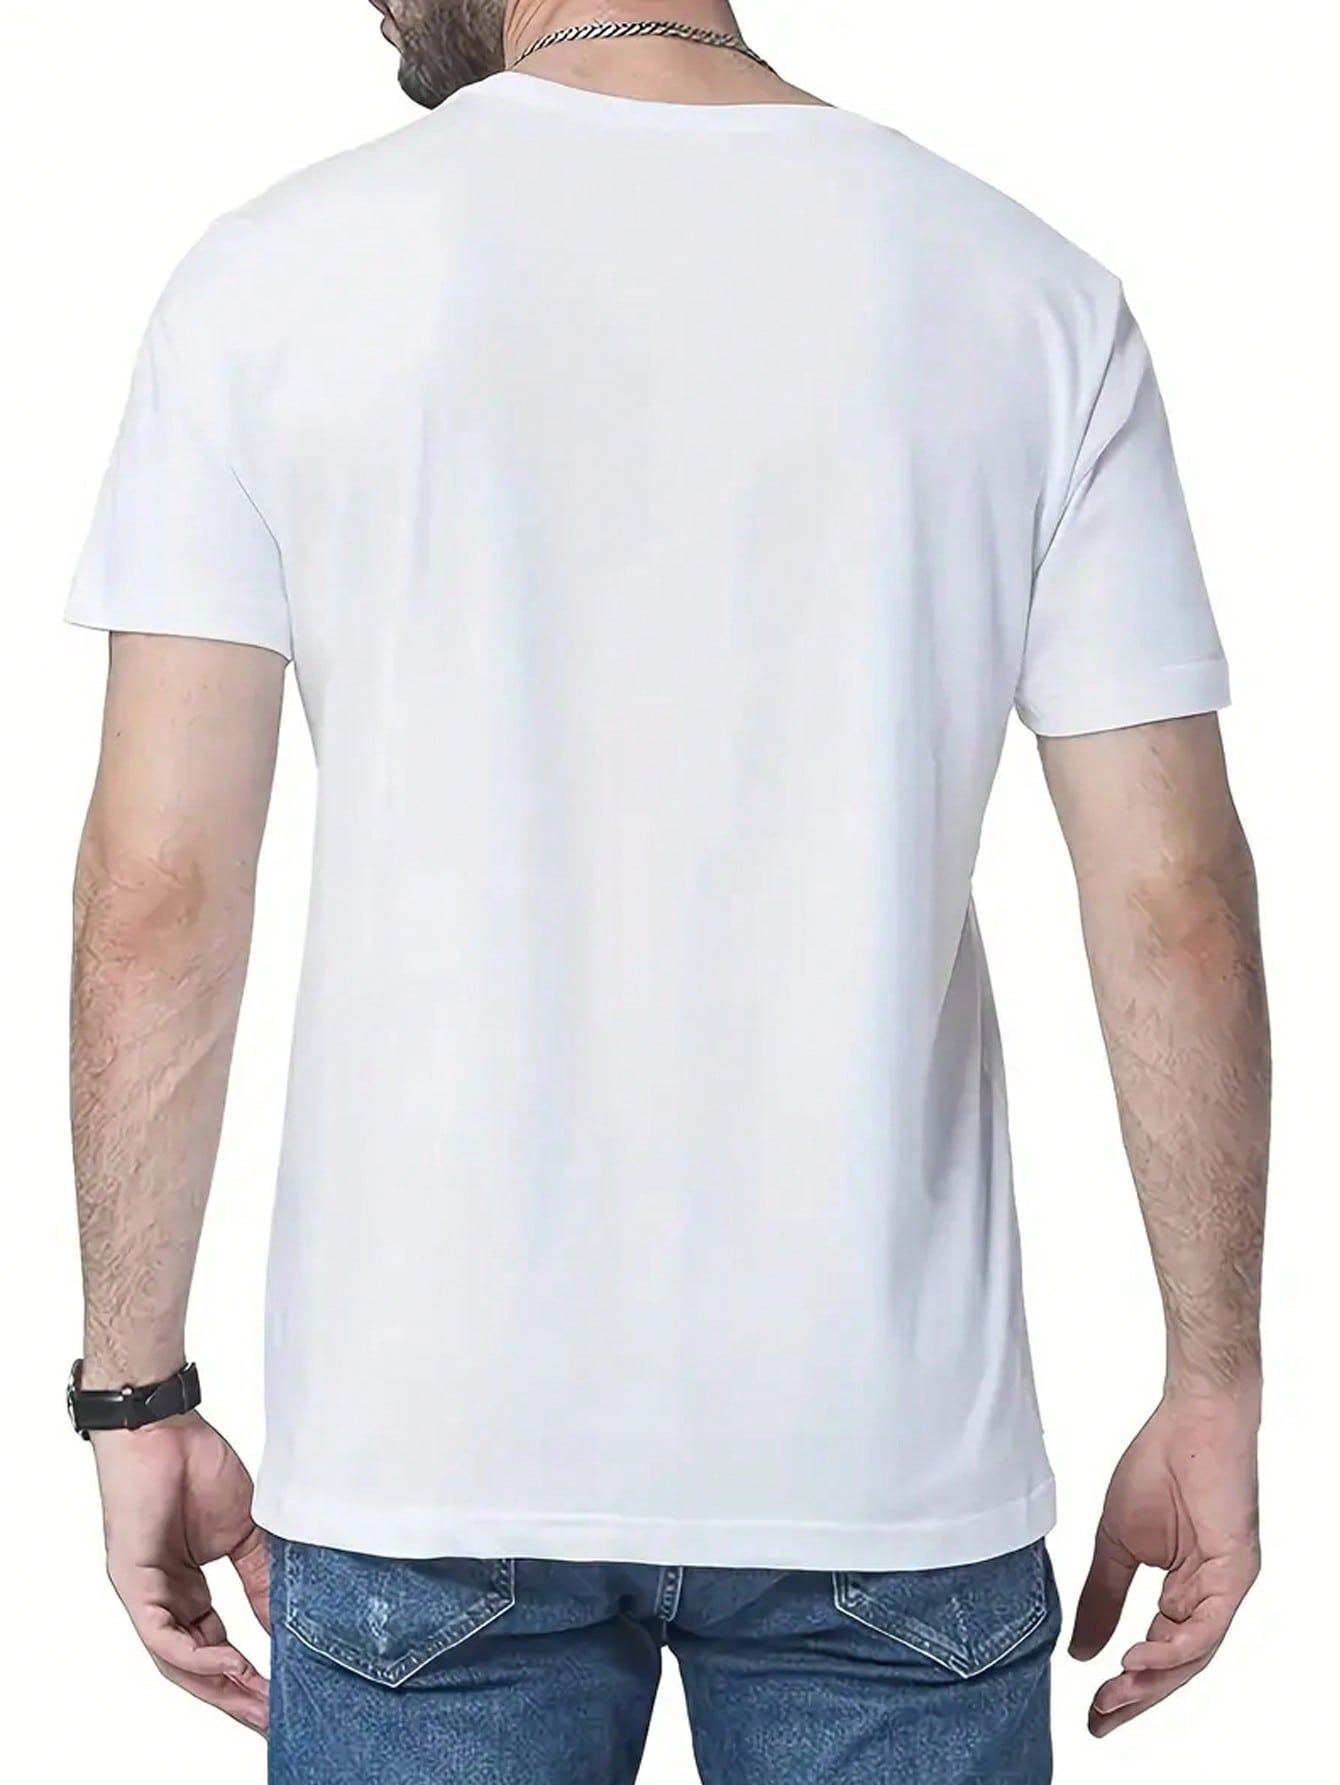 Мужская футболка с коротким рукавом, круглым вырезом и принтом со слоганом, белый футболка мужская оверсайз с принтом молнии топ с коротким рукавом и круглым вырезом свободная уличная одежда лето